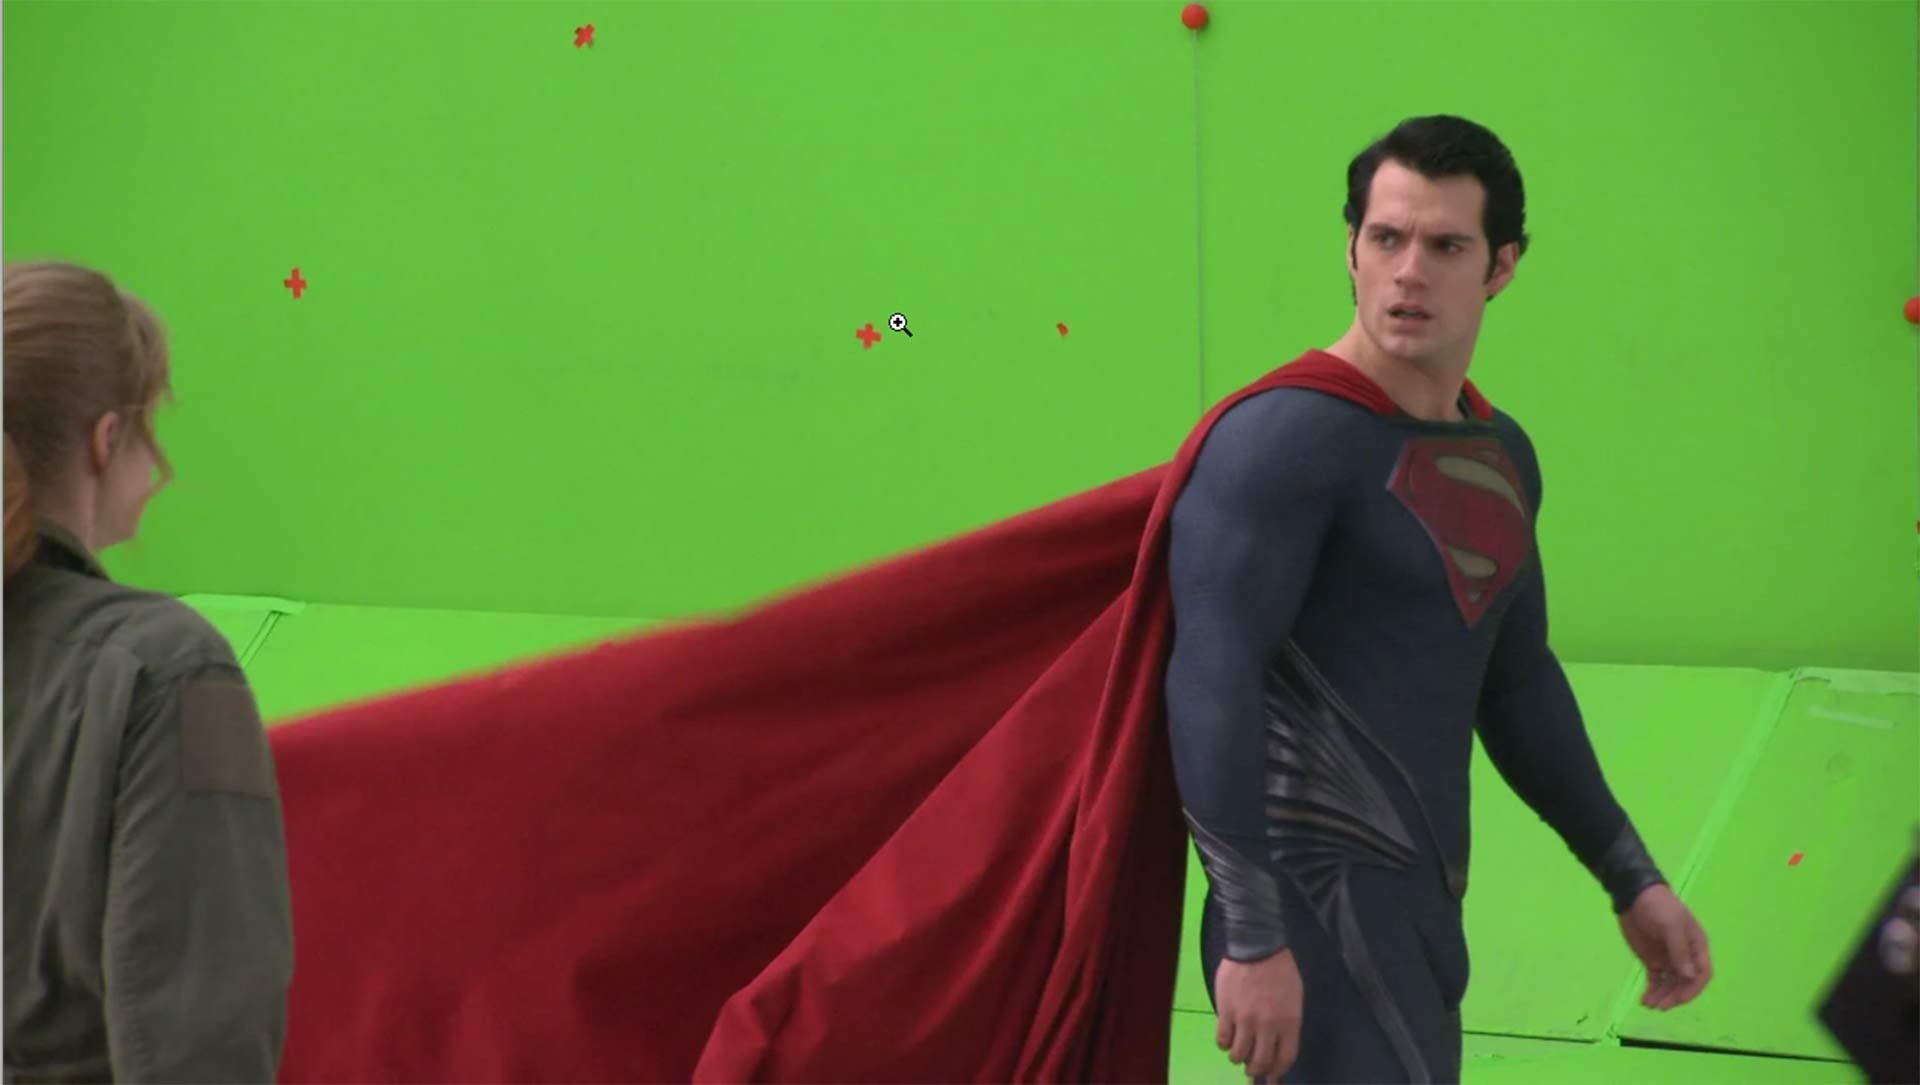 هنری کویل در نقش سوپرمن در مقابل پرده سبز